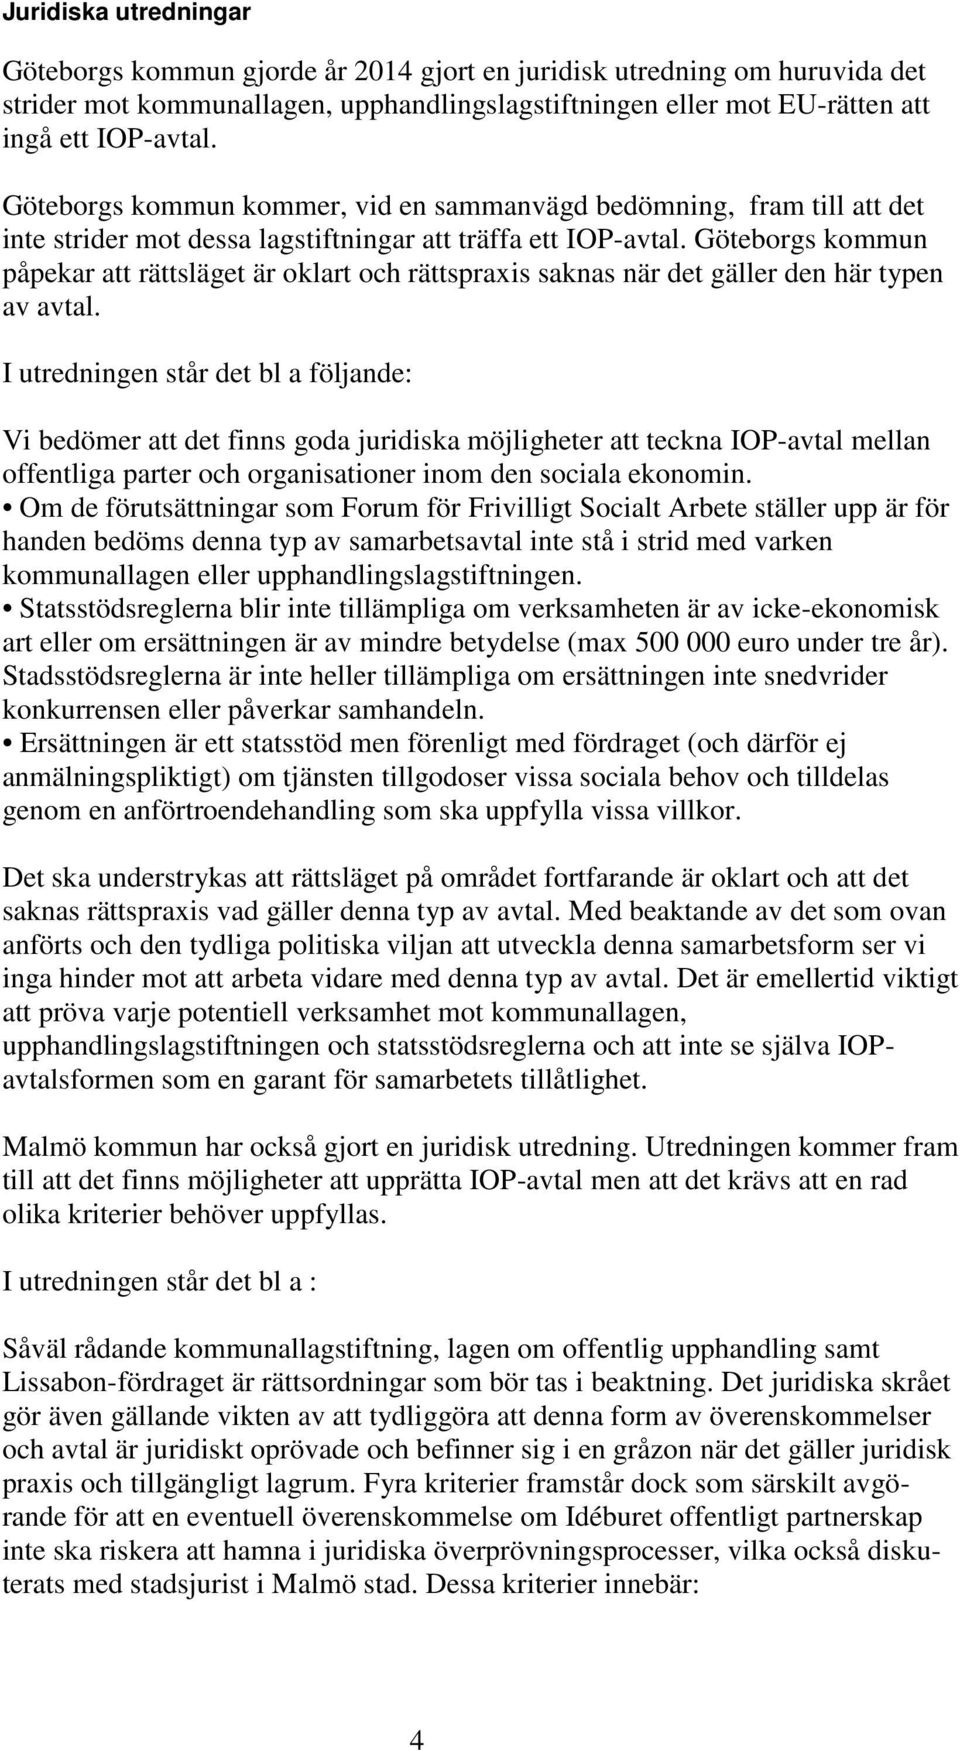 Göteborgs kommun påpekar att rättsläget är oklart och rättspraxis saknas när det gäller den här typen av avtal.